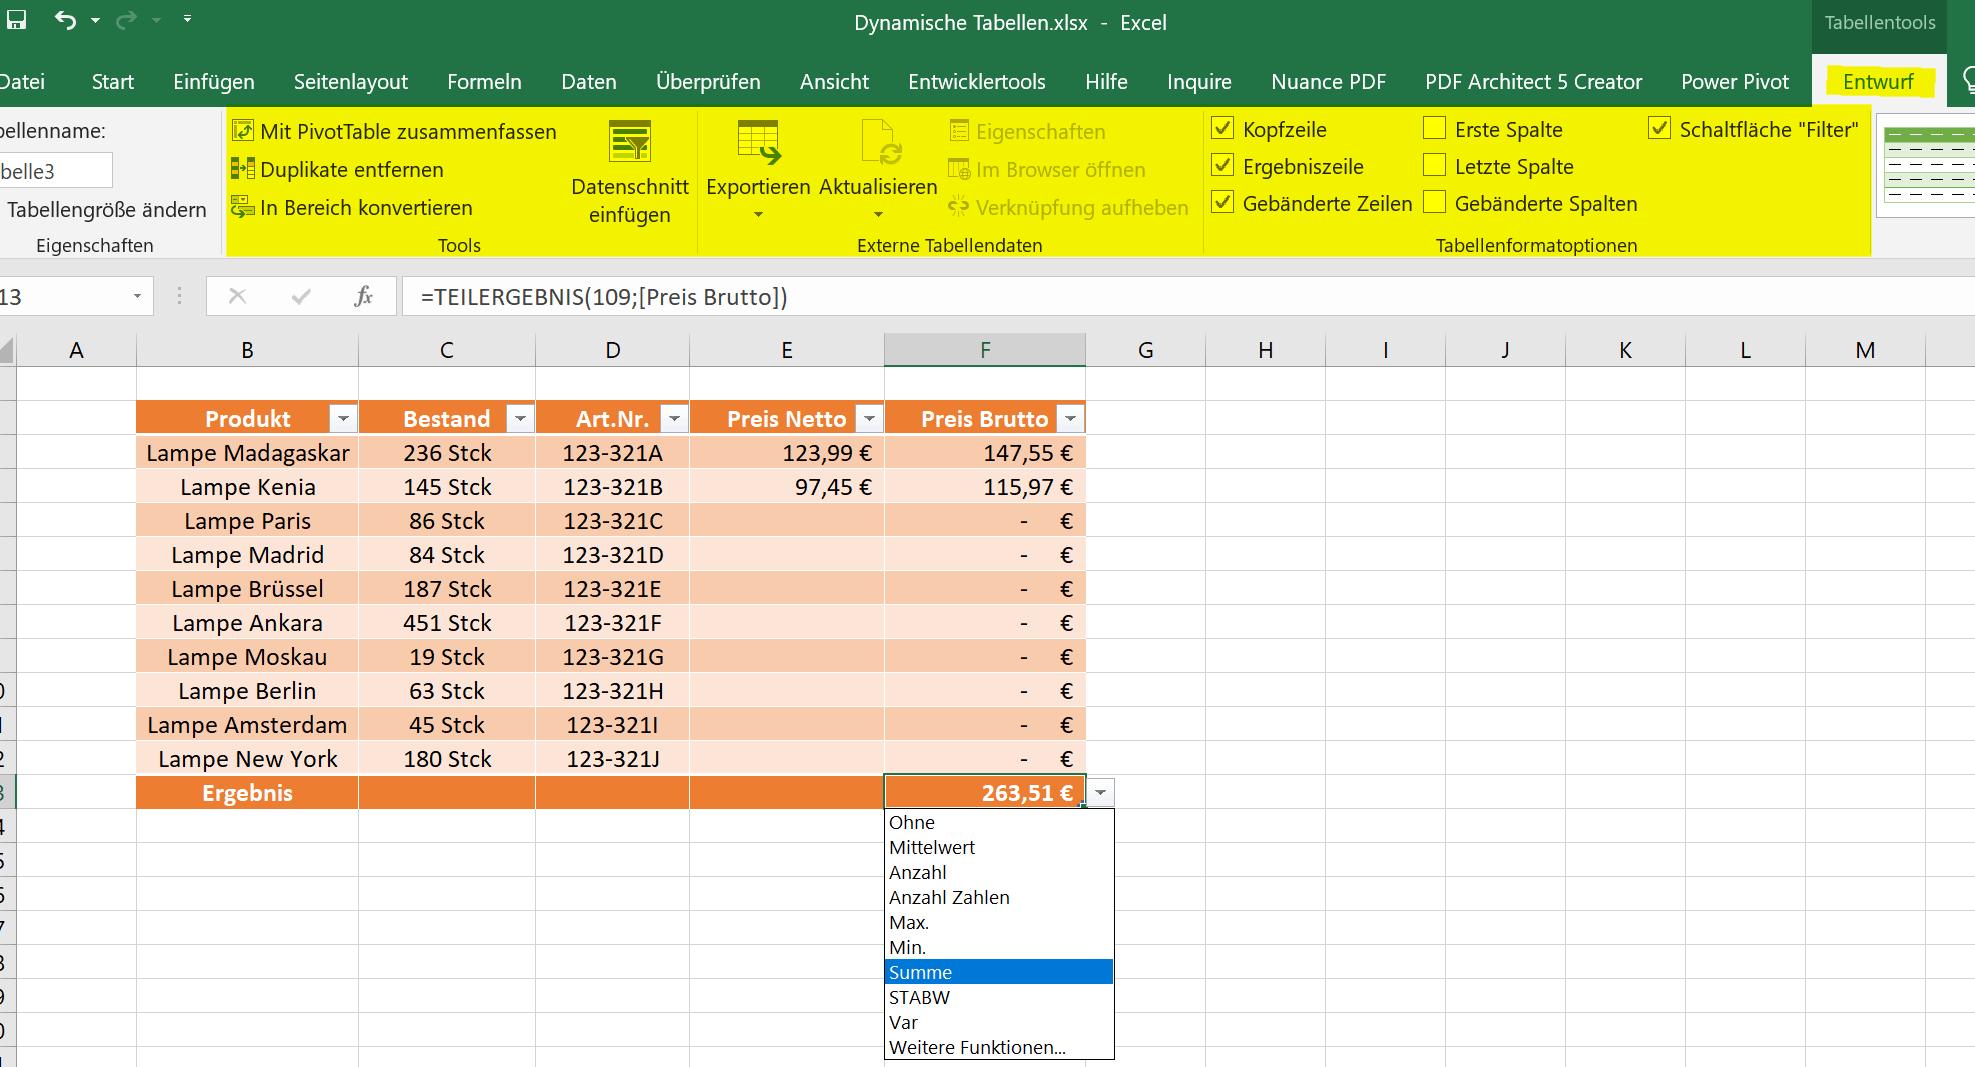 Funktionen in dynamischen Tabellen in Excel